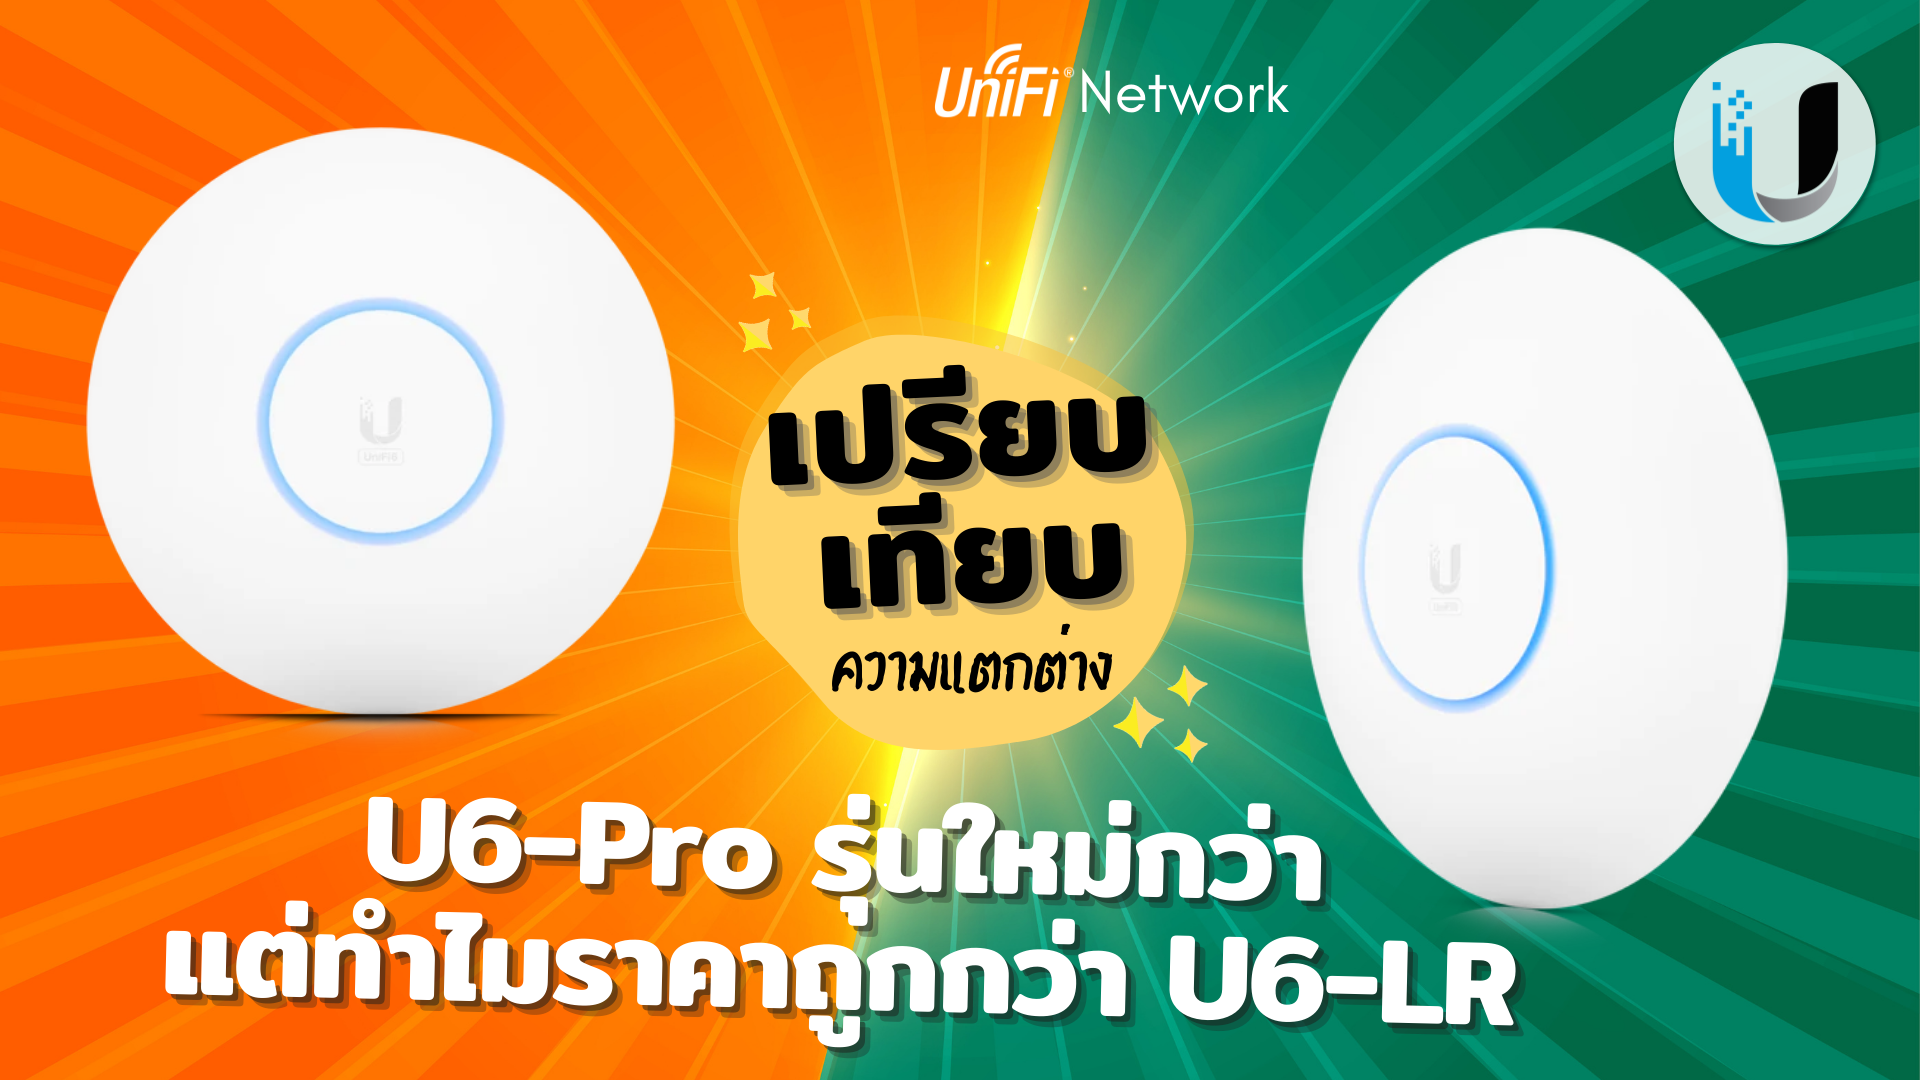 เปรียบเทรียบรุ่น Unifi U6-Pro รุ่นใหม่กว่า แต่ทำไมราคาถูกกว่า U6-LR  [ ฉบับดูเข้าใจง่าย ]